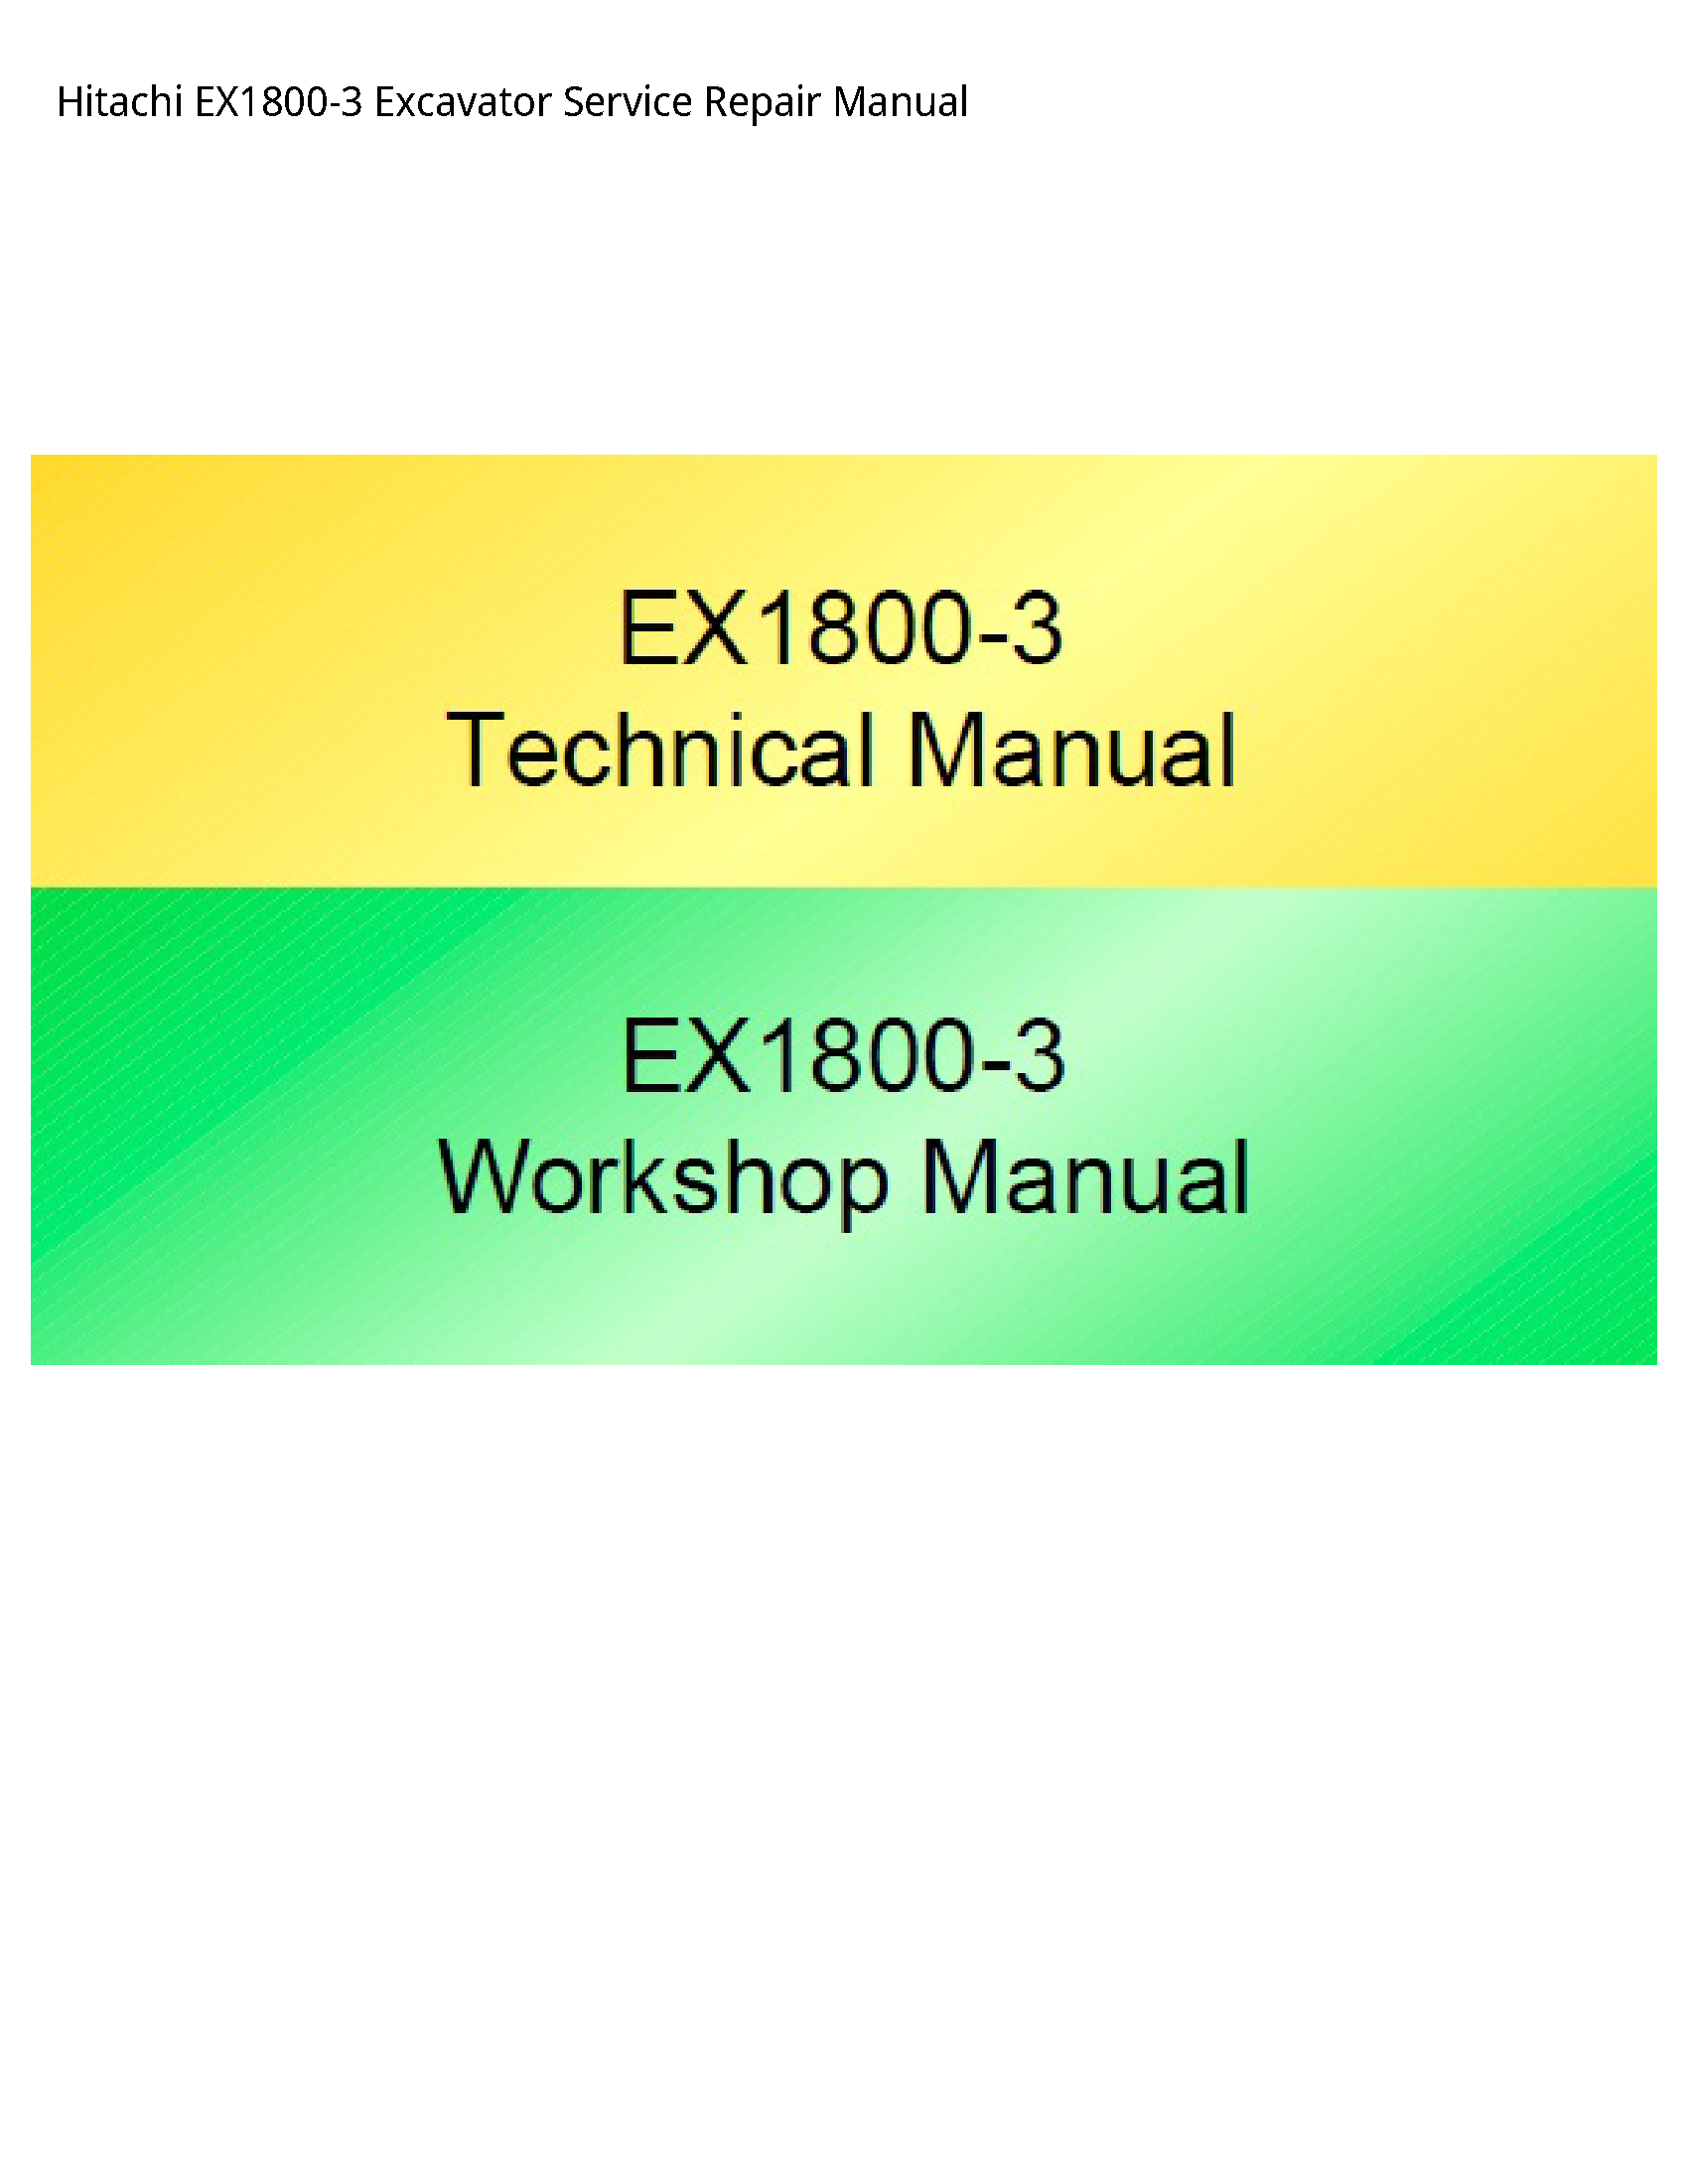 Hitachi EX1800-3 Excavator manual